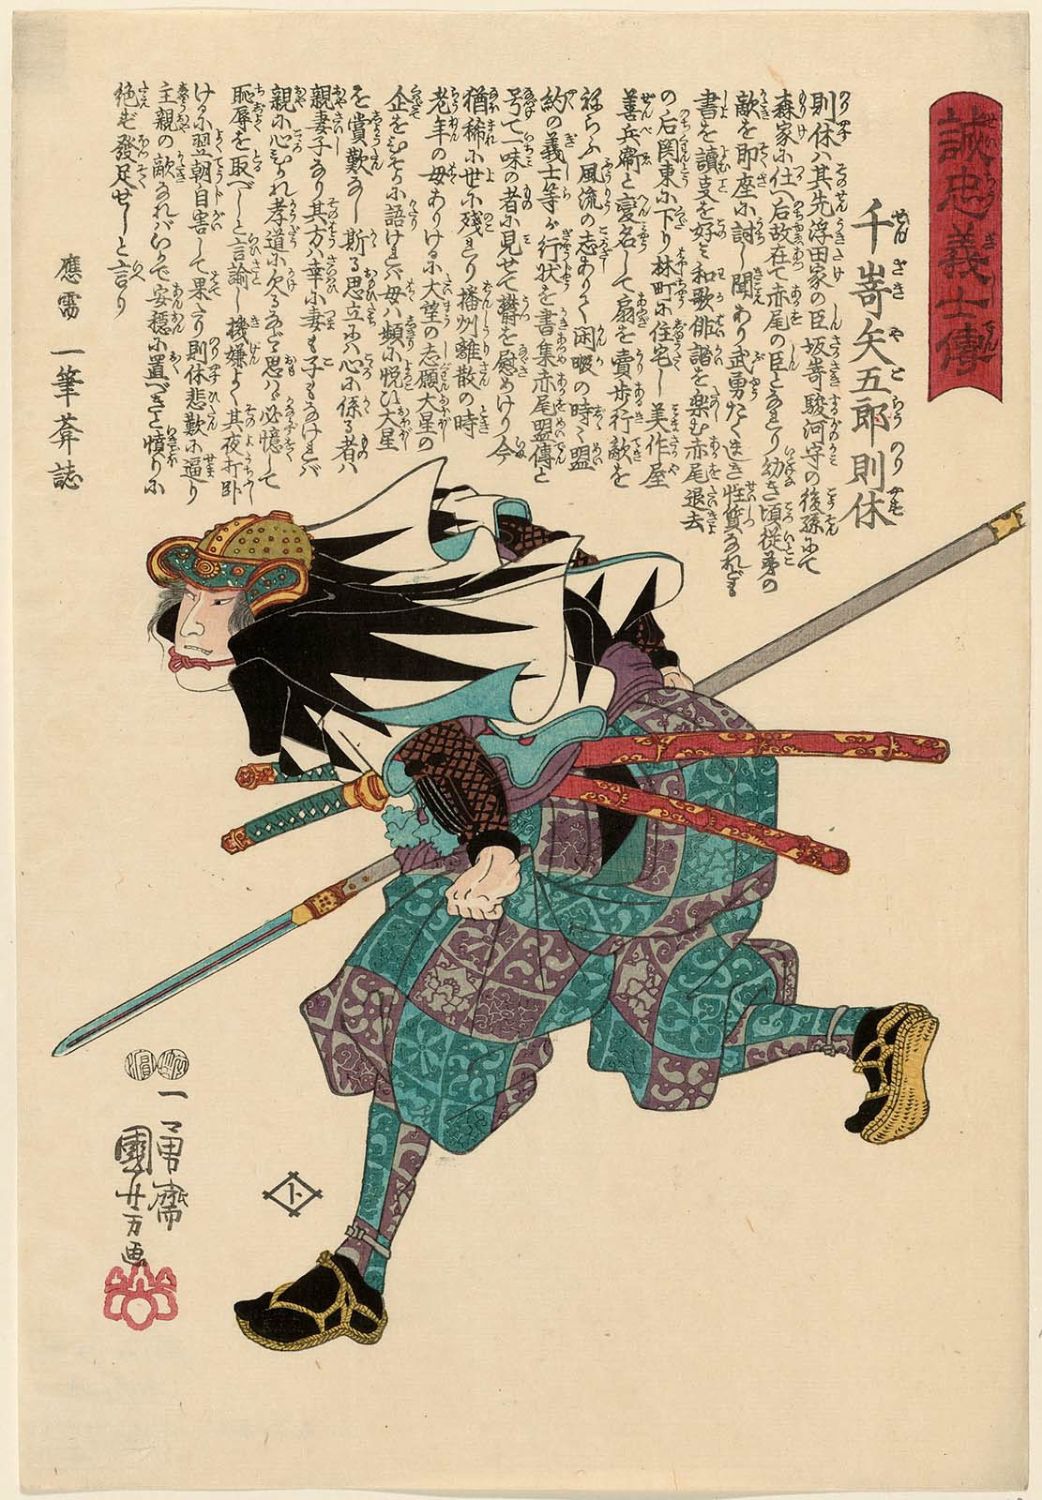 Utagawa Kuniyoshi: No. 12 Senzaki Yagoro Noriyasu 千崎矢五郎則休 